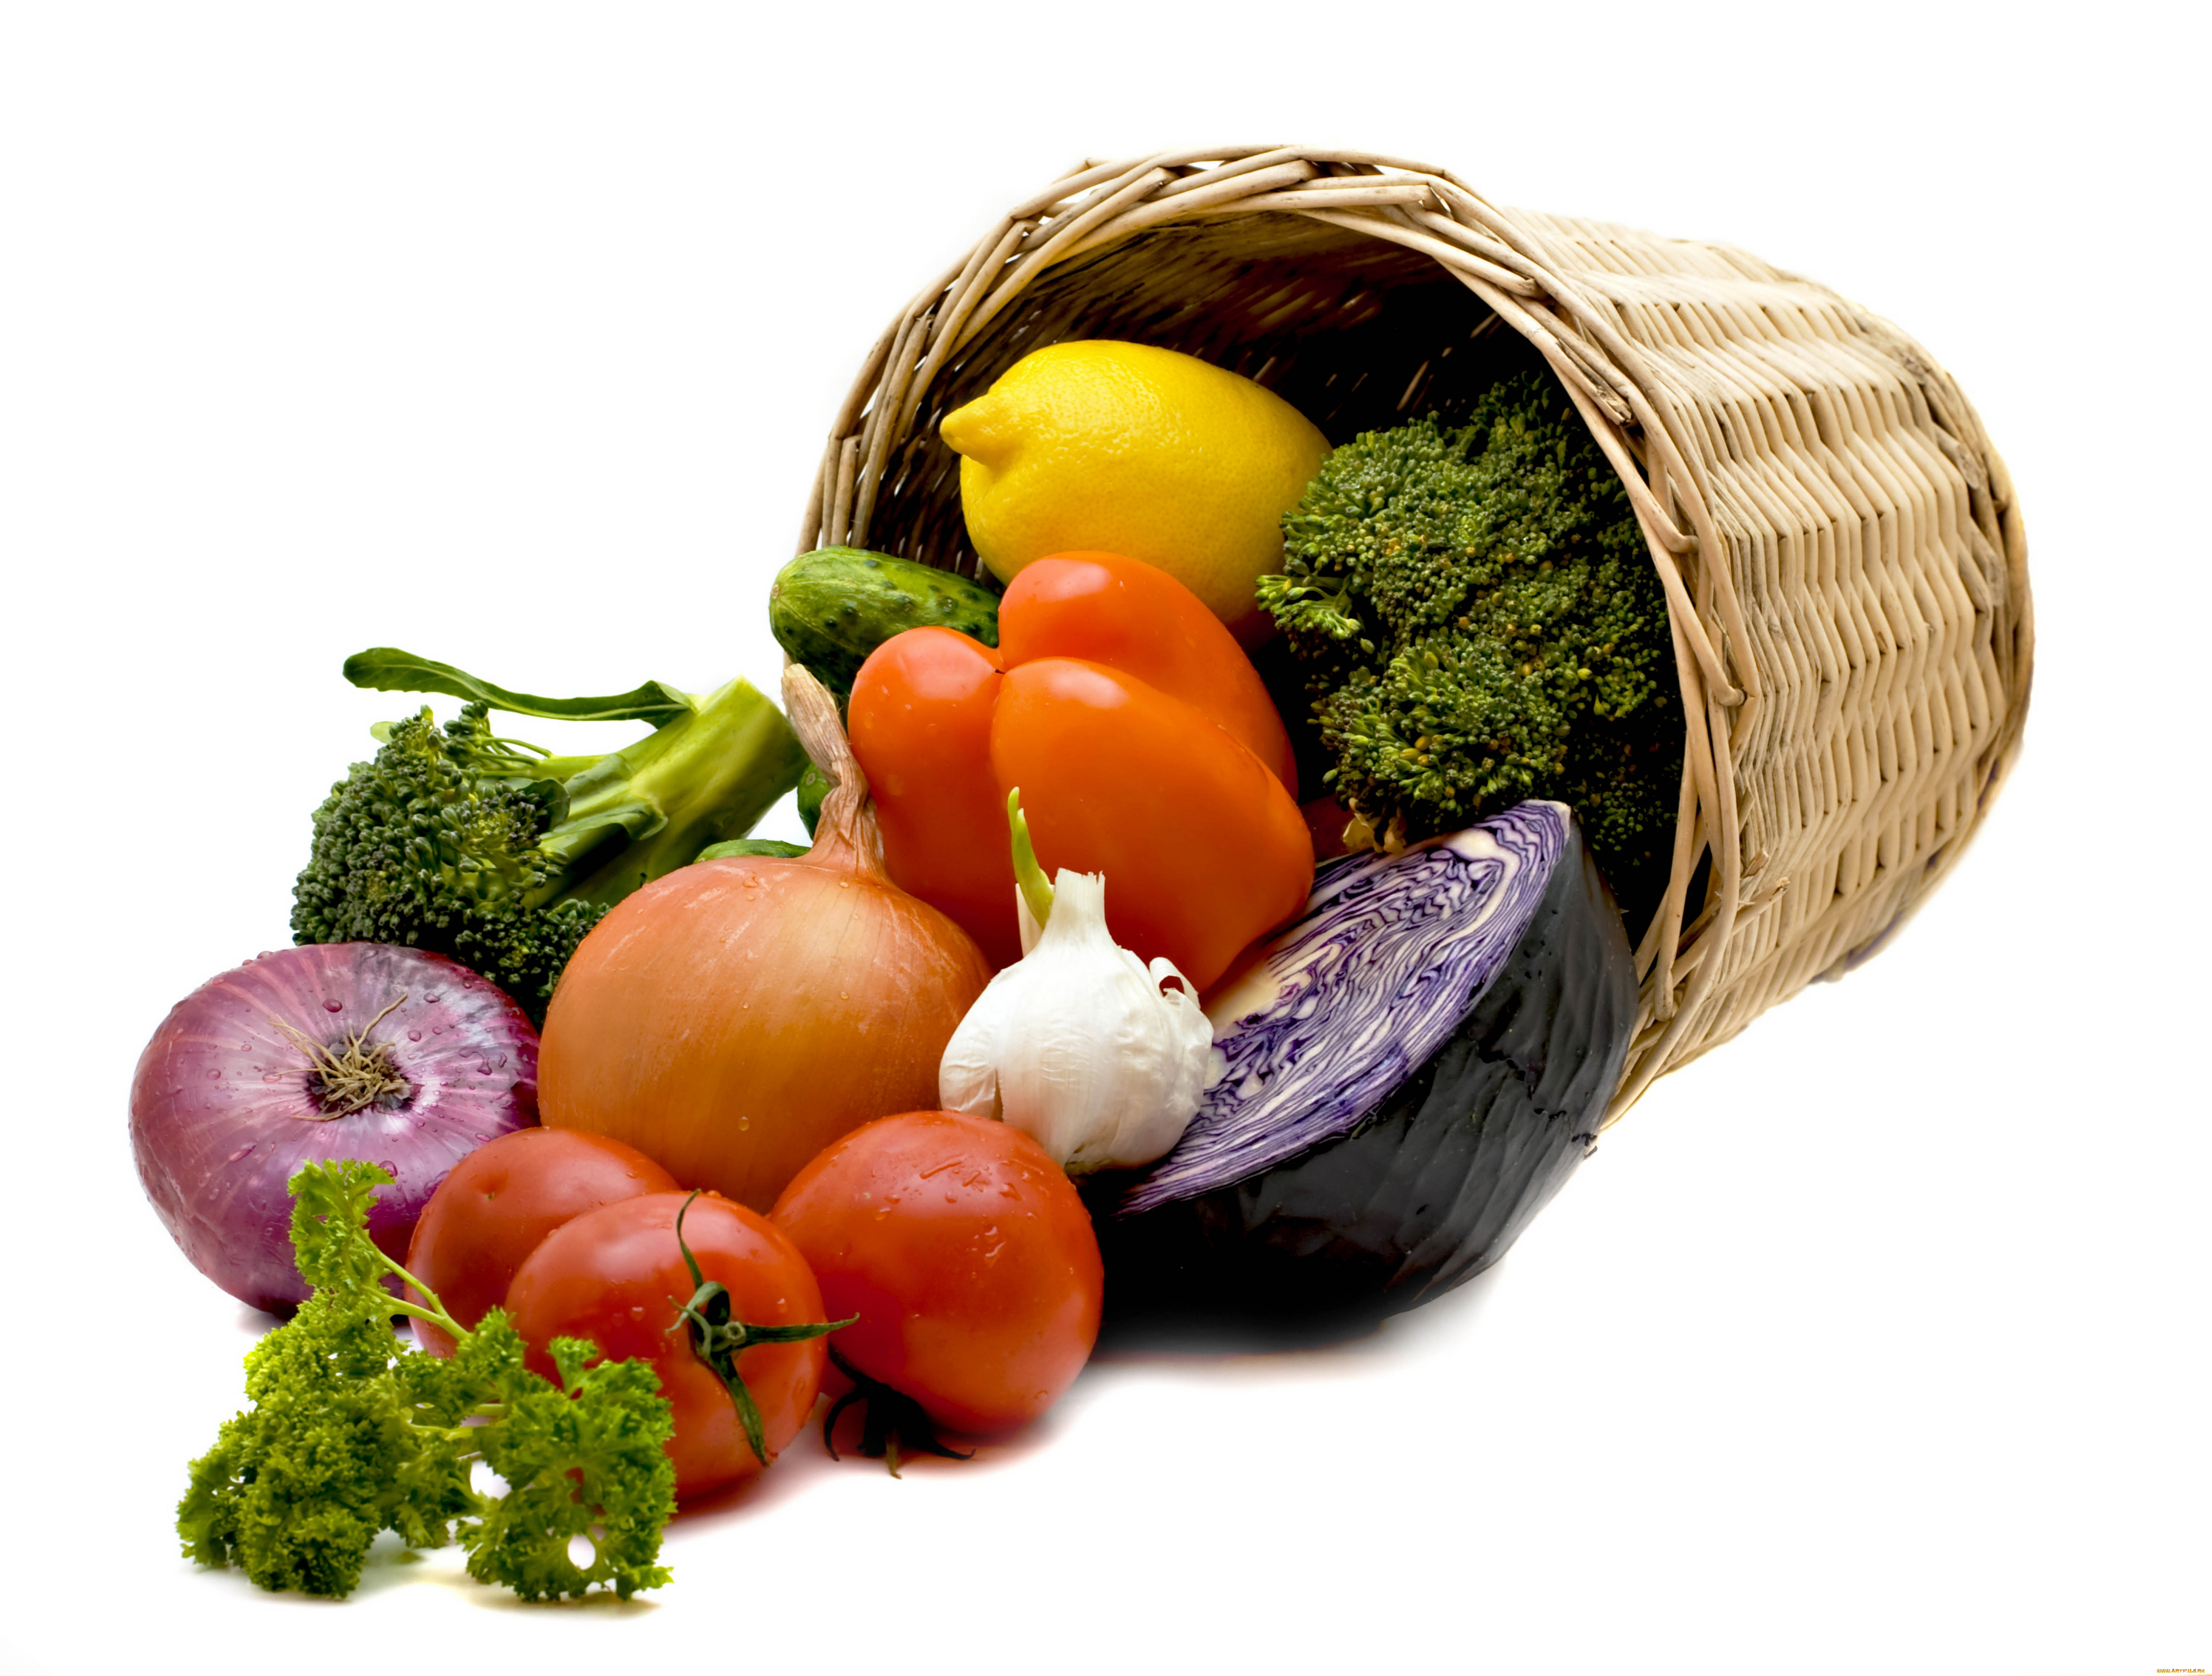 еда, овощи, продукты, белый, фон, корзина, лимон, помидоры, лук, томаты, цветная, капуста, капуста